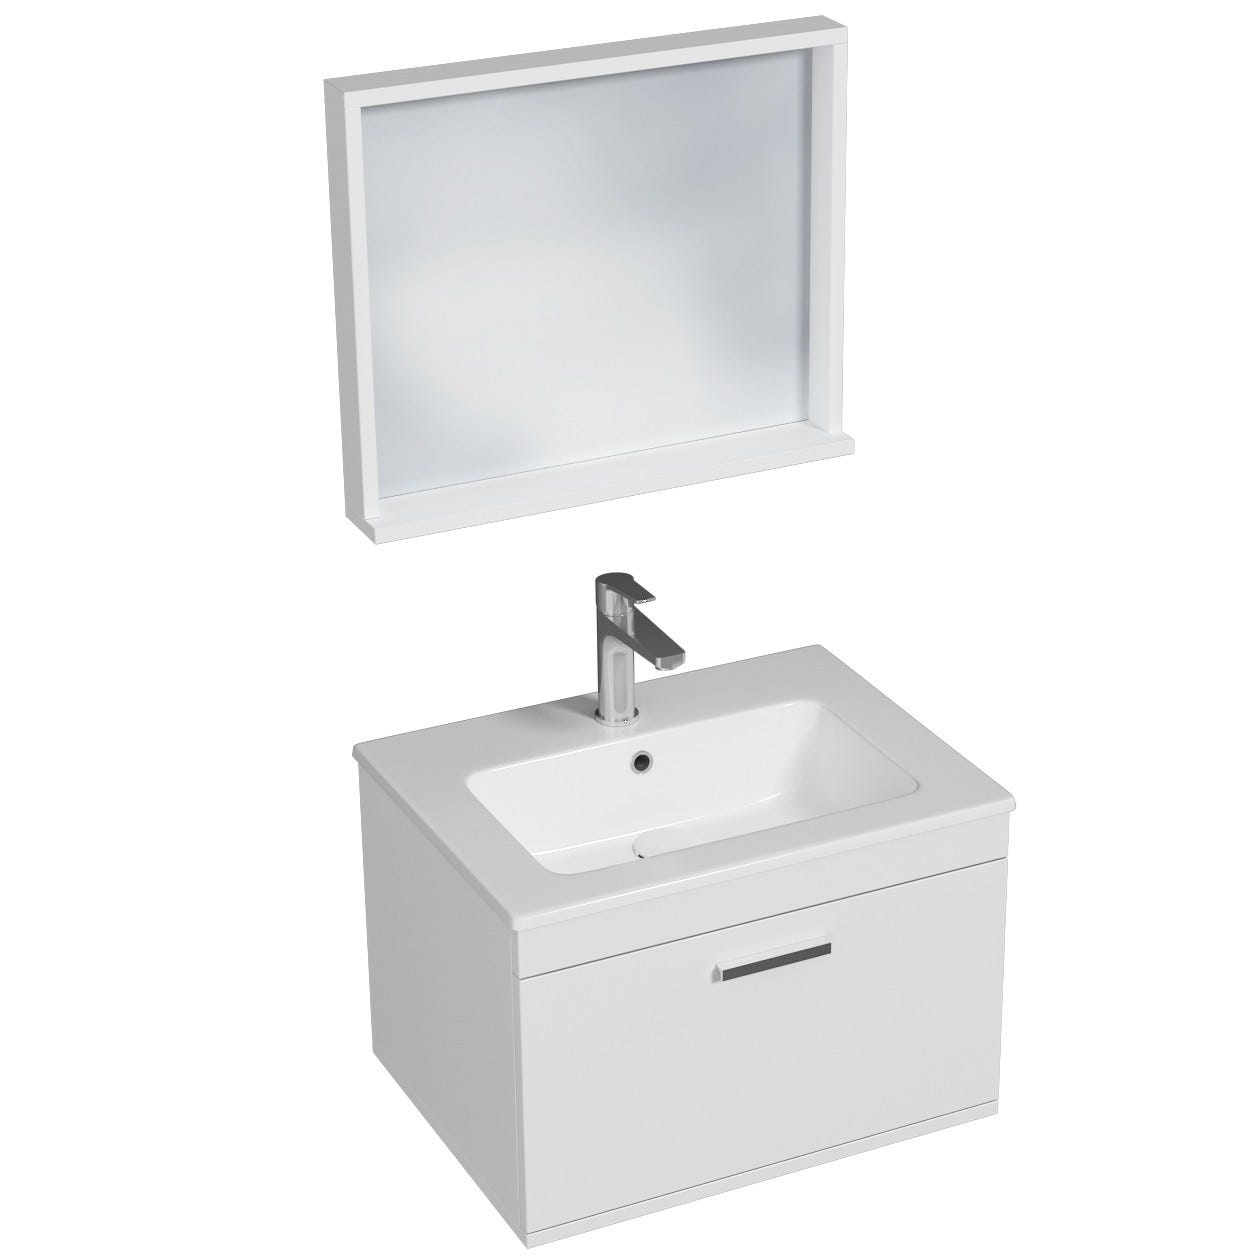 RUBITE Meuble salle de bain simple vasque 1 tiroir blanc largeur 60 cm + miroir cadre 0